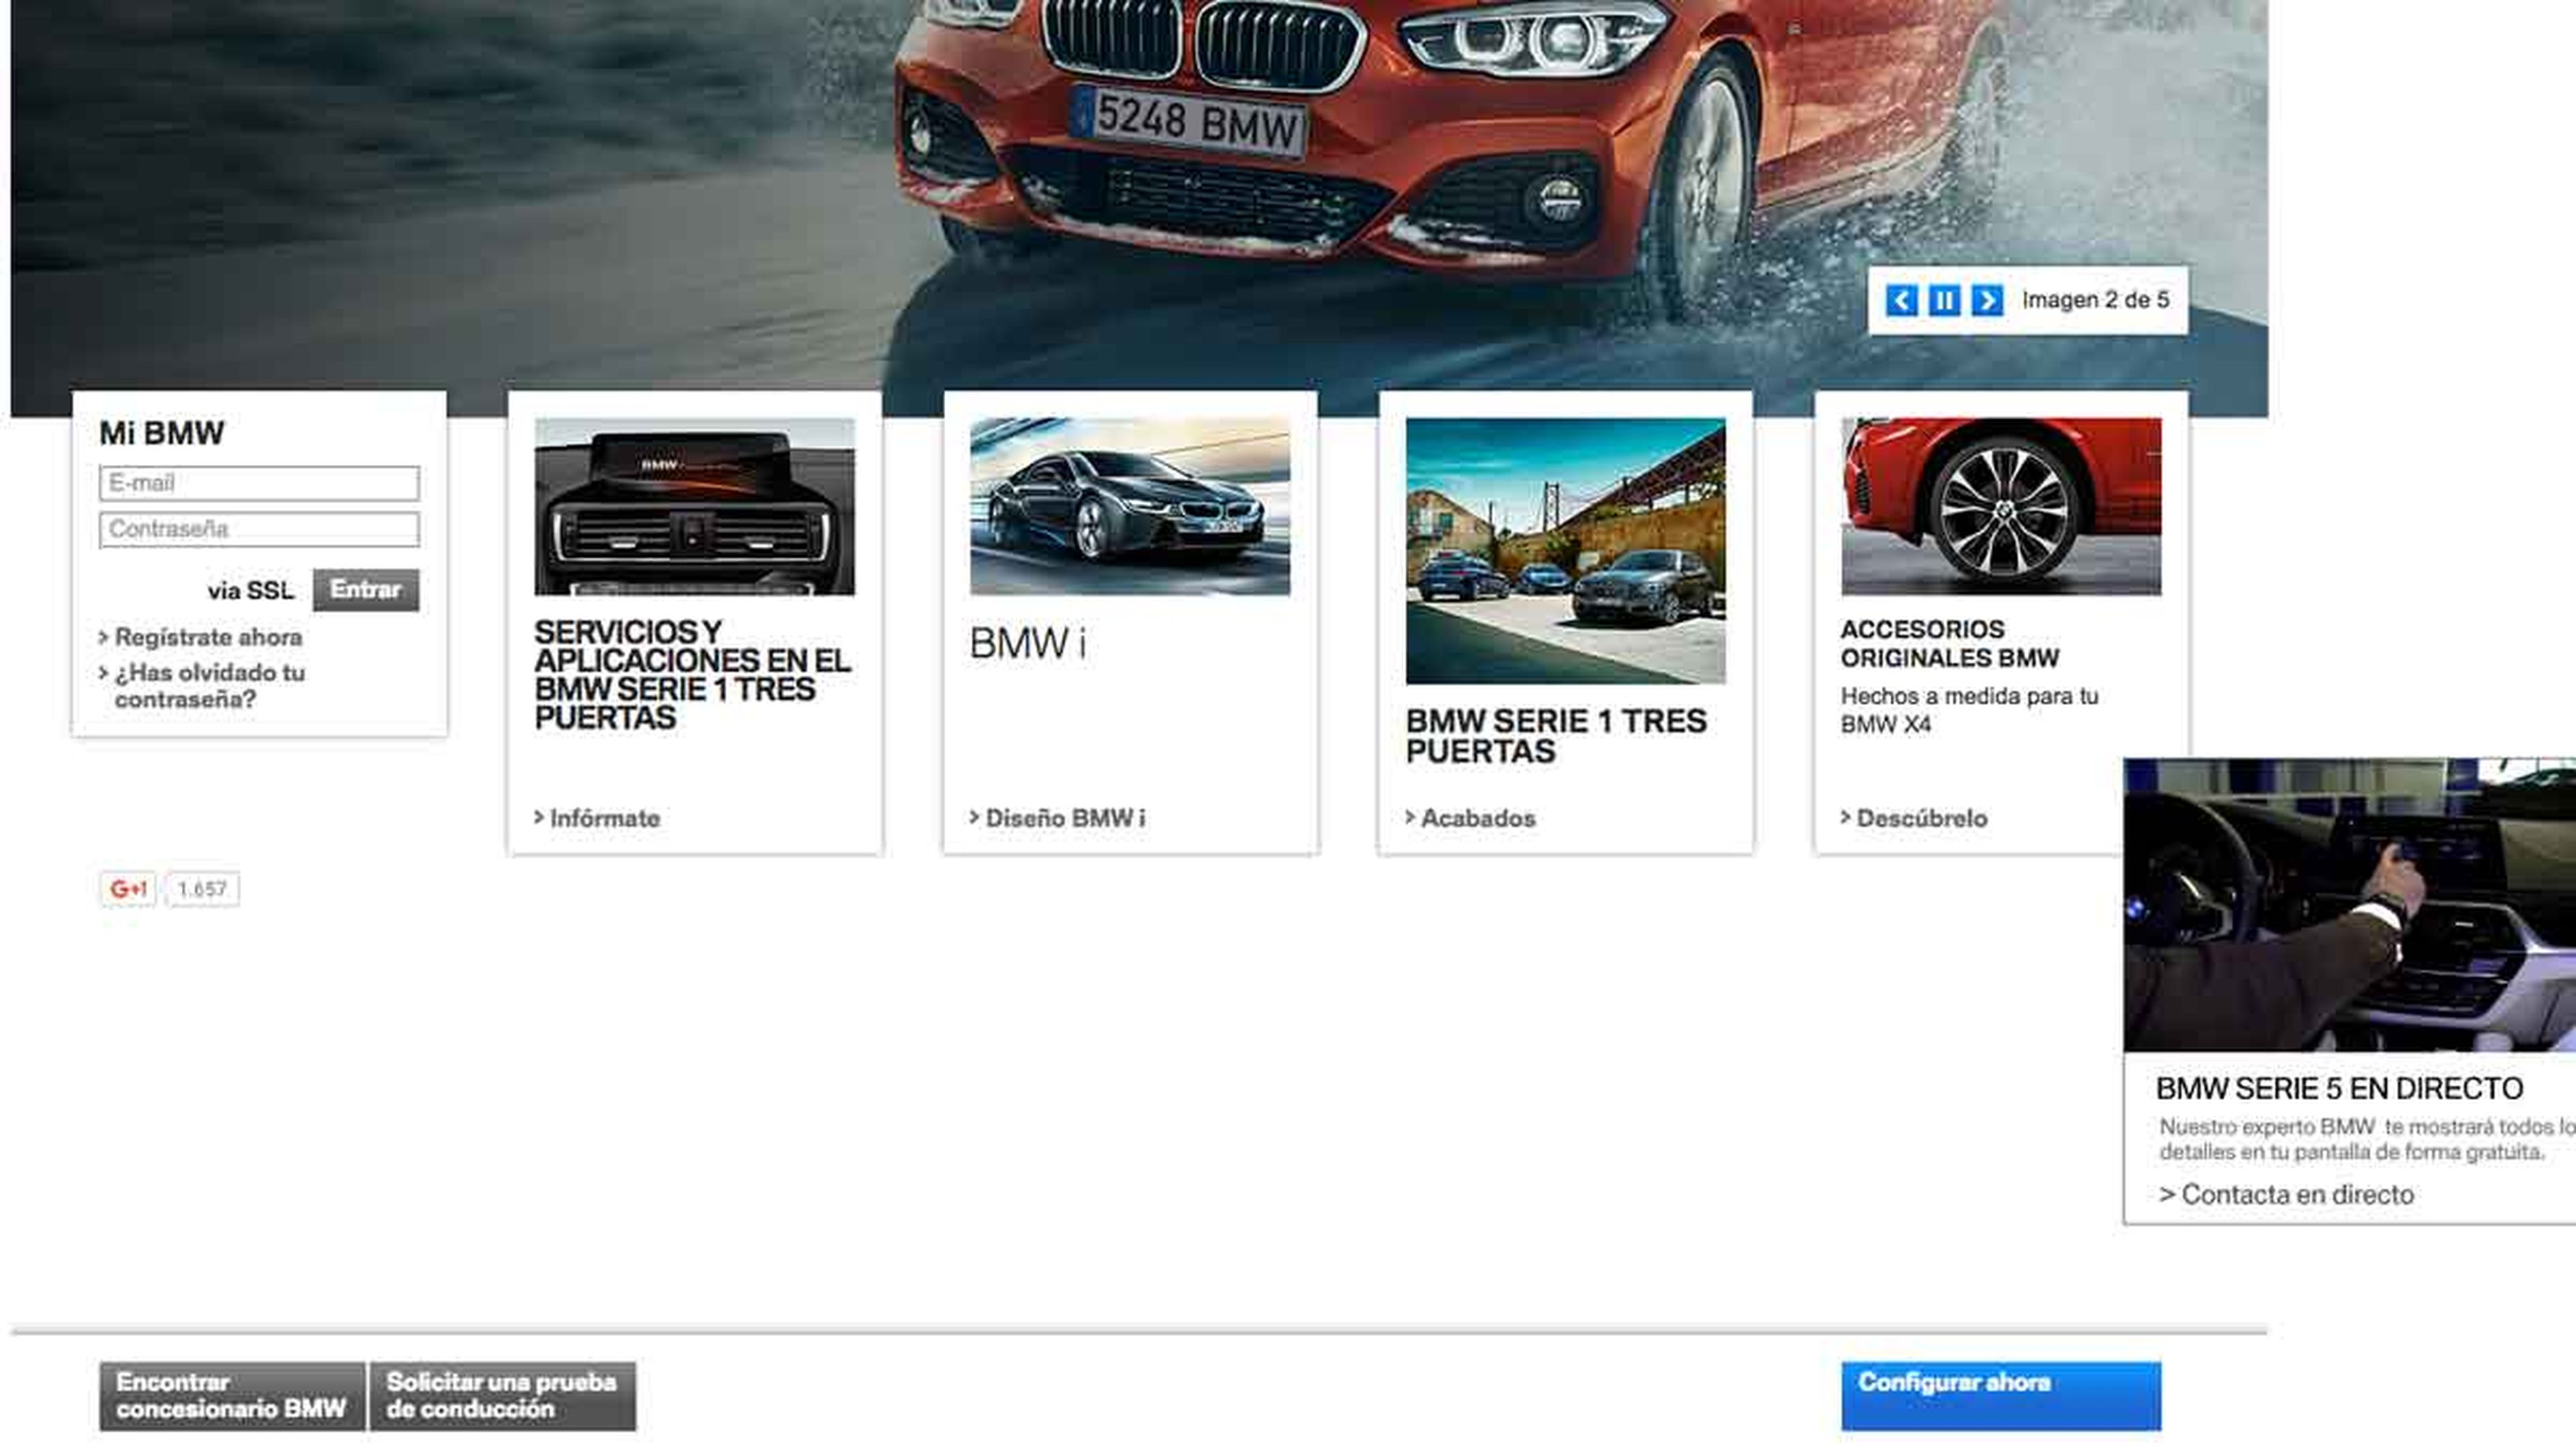 Para configurar tu BMW, ve a la web www.bmw.es.